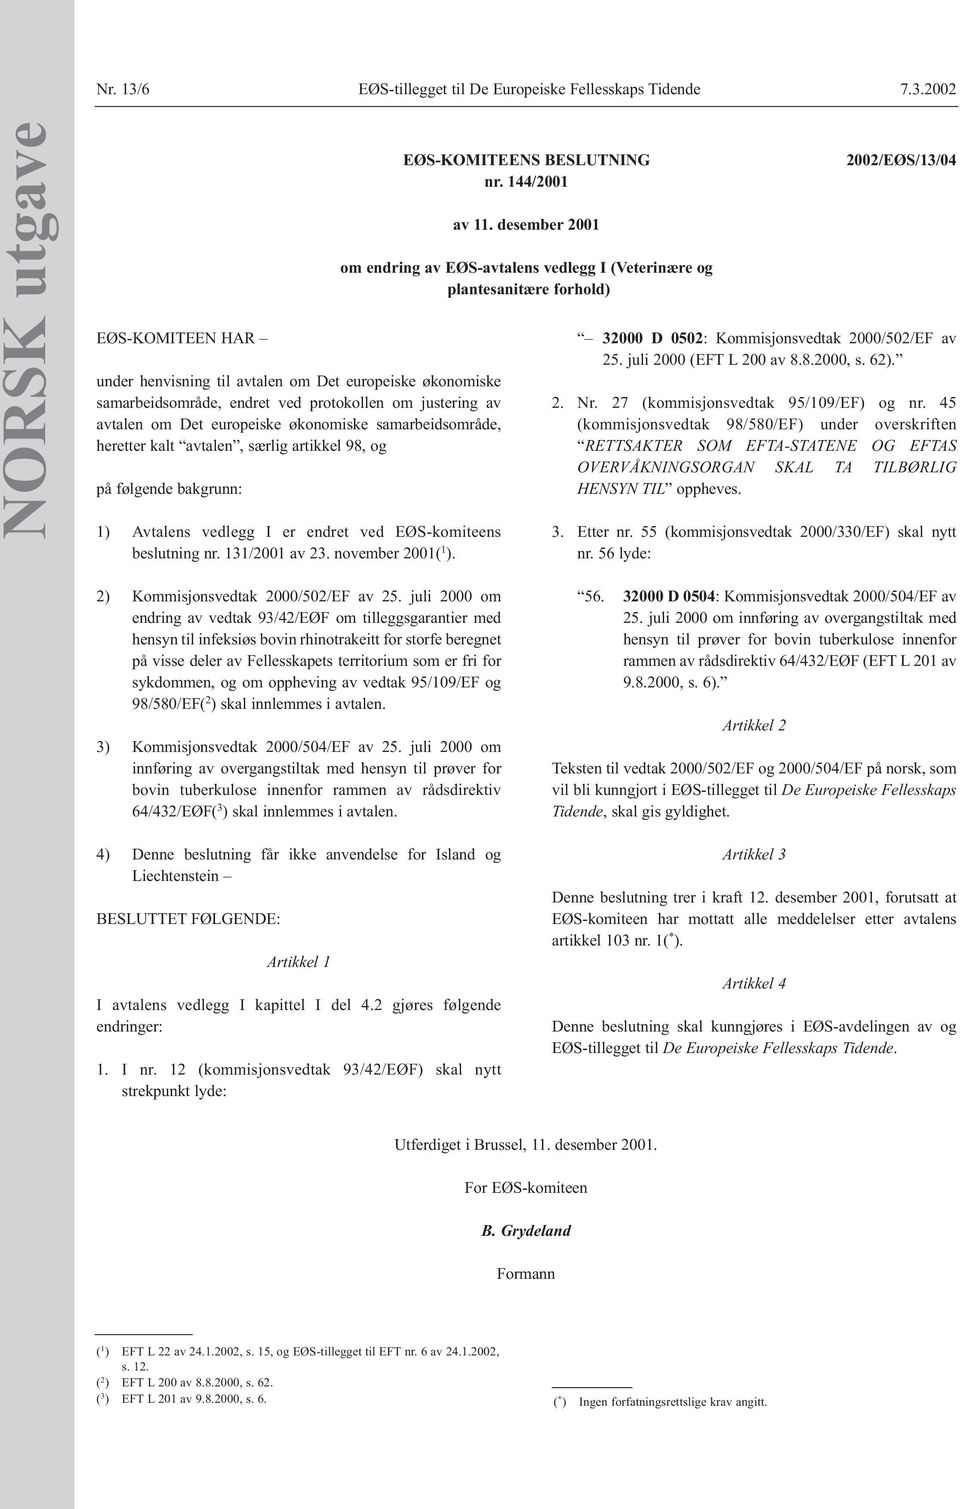 2002 NORSK utgave EØS-KOMITEEN HAR under henvisning til avtalen om Det europeiske økonomiske samarbeidsområde, endret ved protokollen om justering av avtalen om Det europeiske økonomiske